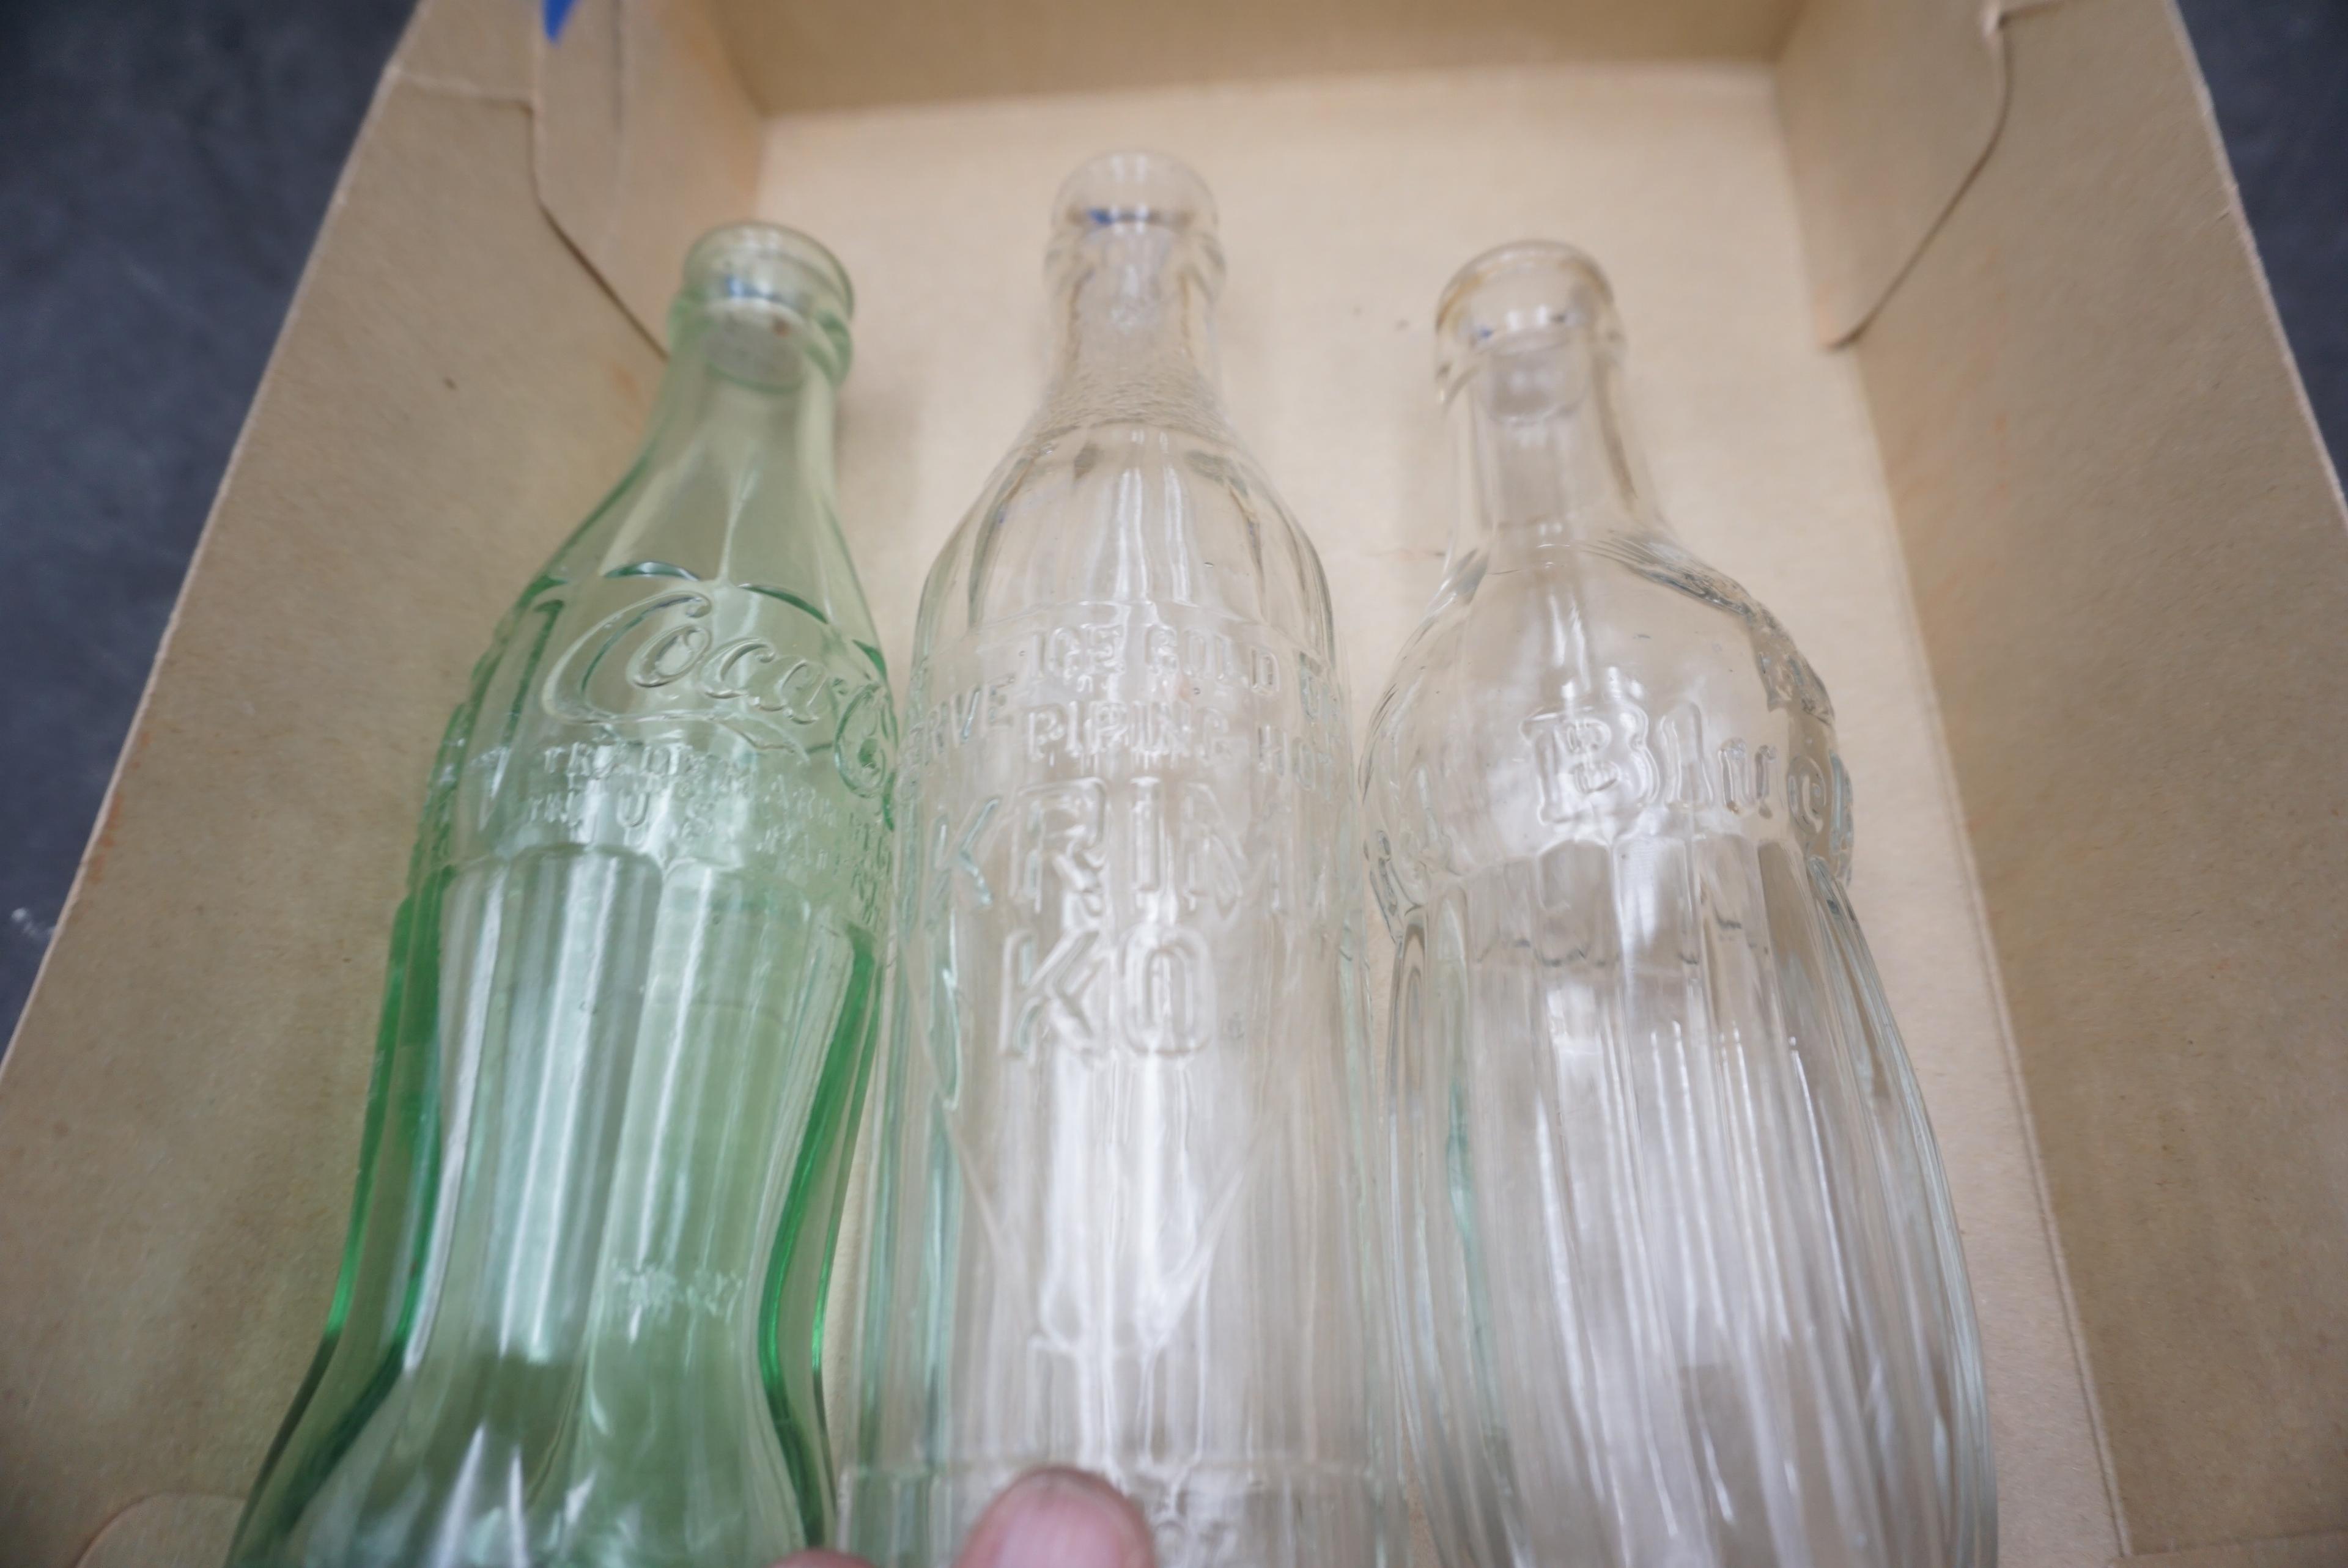 3 - Glass Bottles